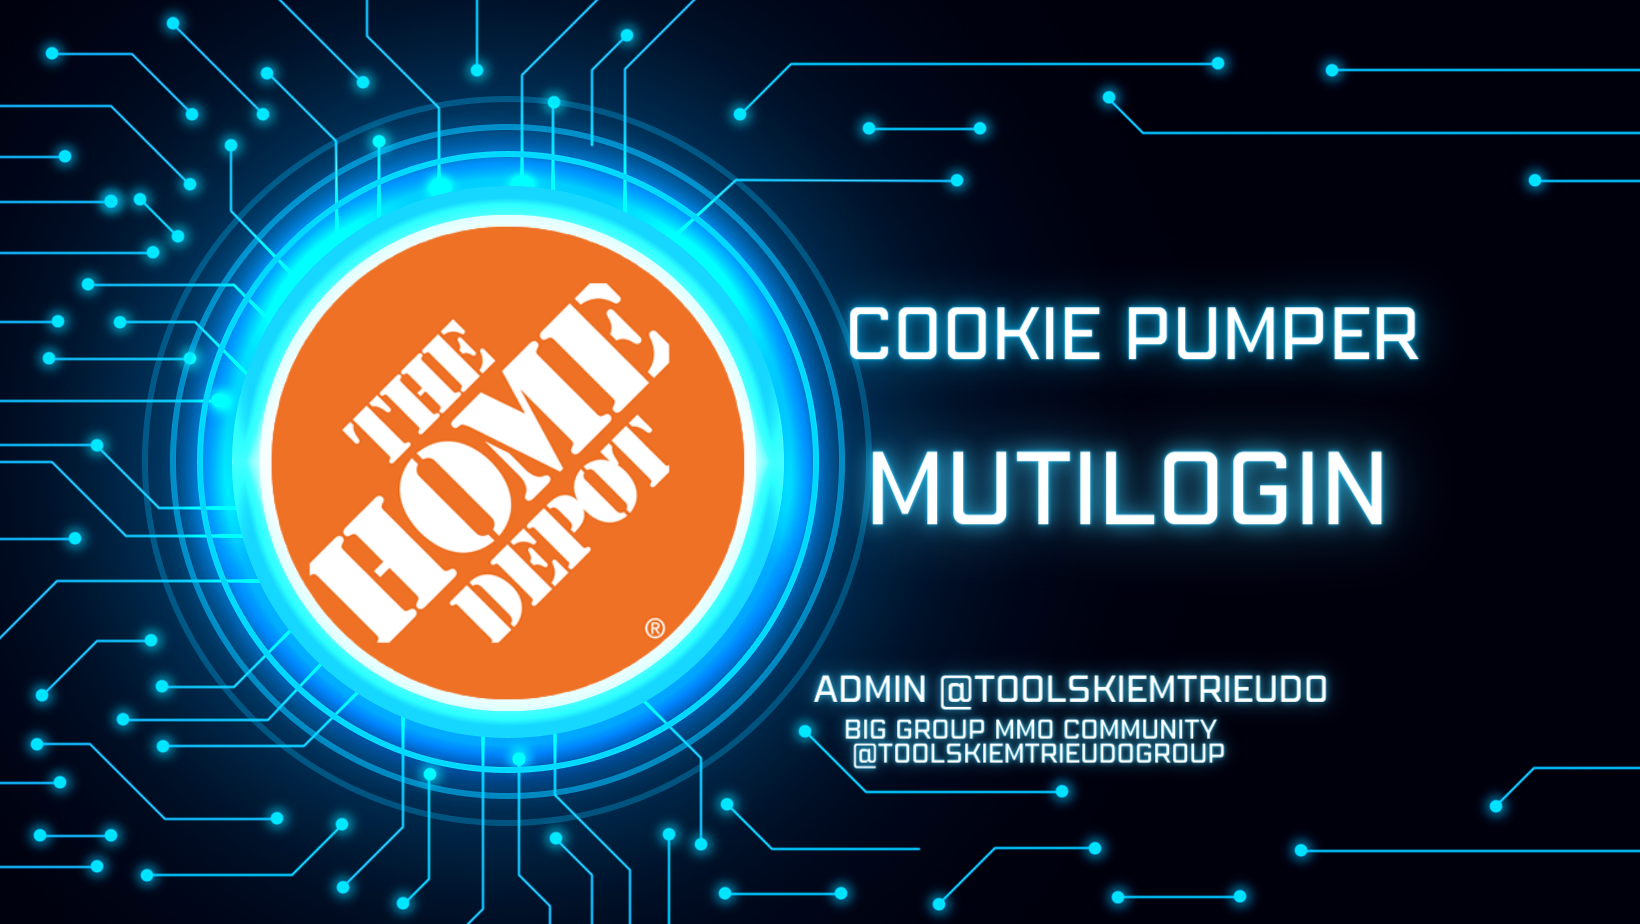 Công cụ nuôi tài khoản Homedepot trên Antidetect browser Mutilogin như người dùng thật- Homedepot cookie Pumper on Antidetect browser Mutilogin Automation like a human